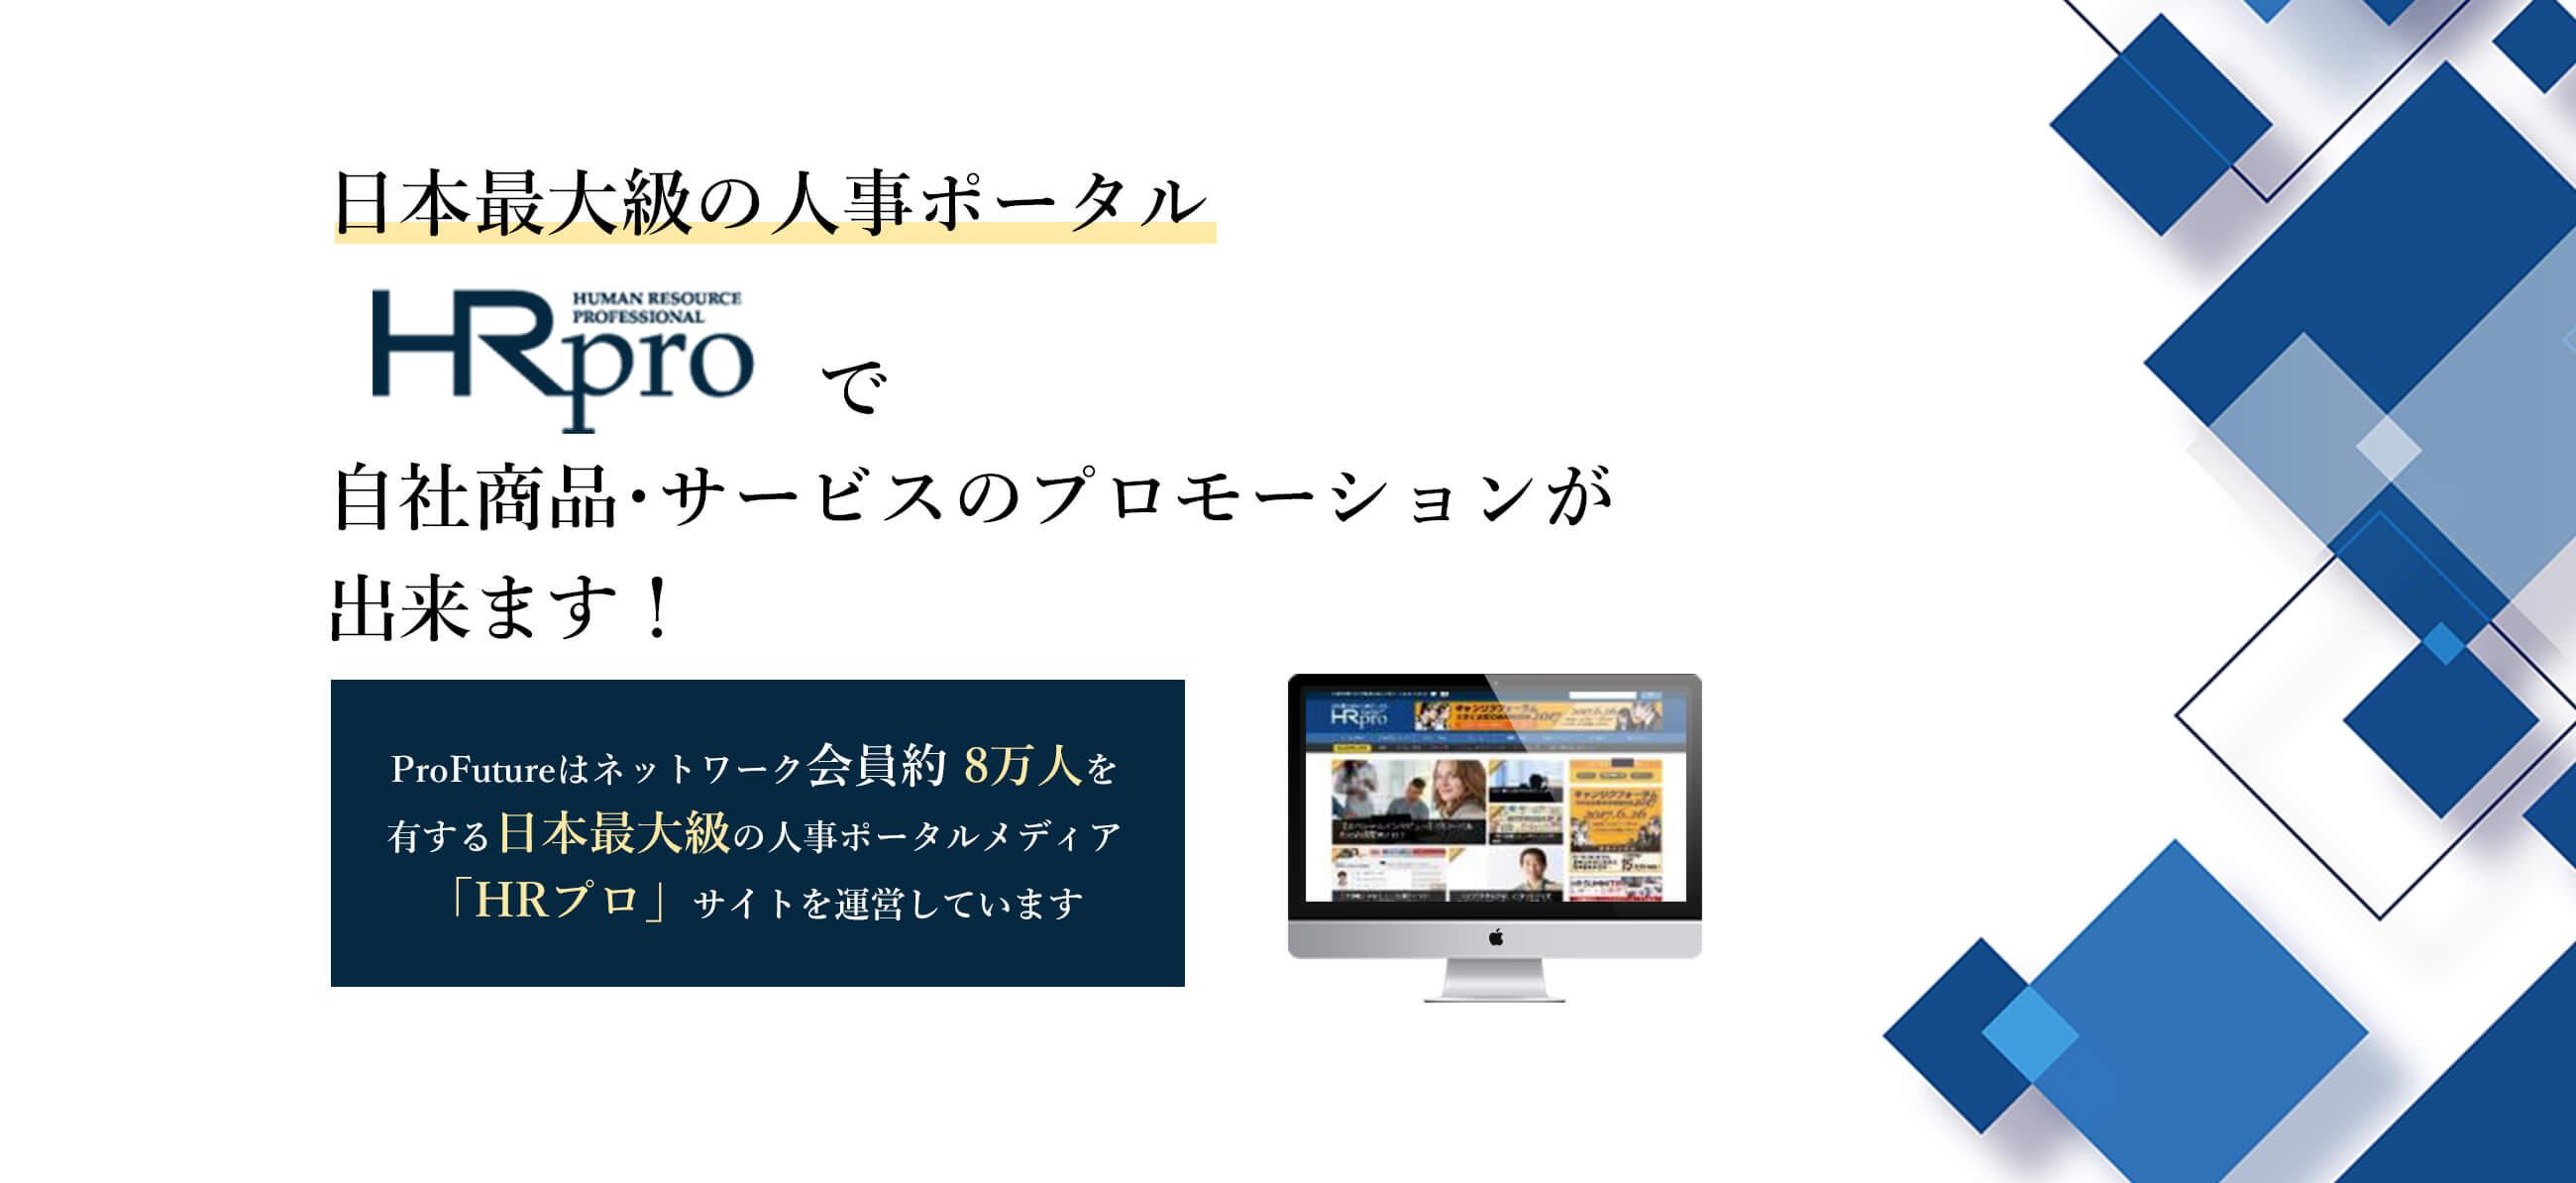 日本最大級の人事ポータルHR proで自社商品・サービスのプロモーションが出来ます！ ProFutureはネットワーク会員約8万人を有する日本最大級の人事ポータルメディア「HRプロ」サイトを運営しています